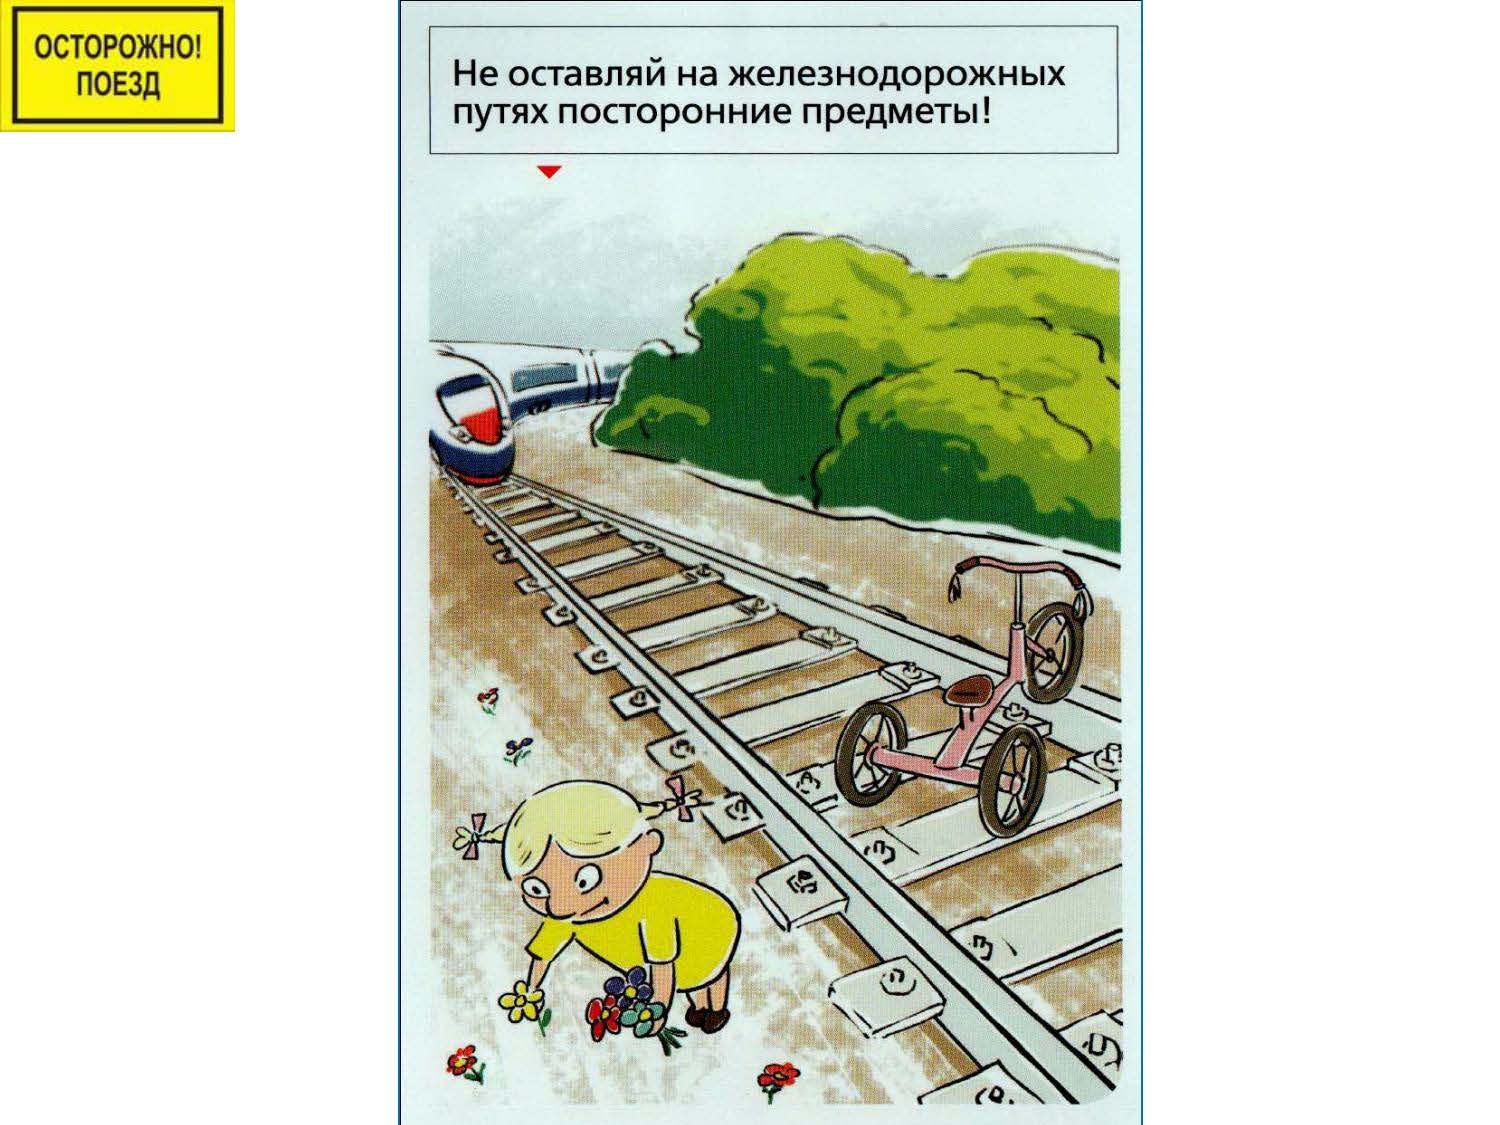 Поведение детей на железной дороге